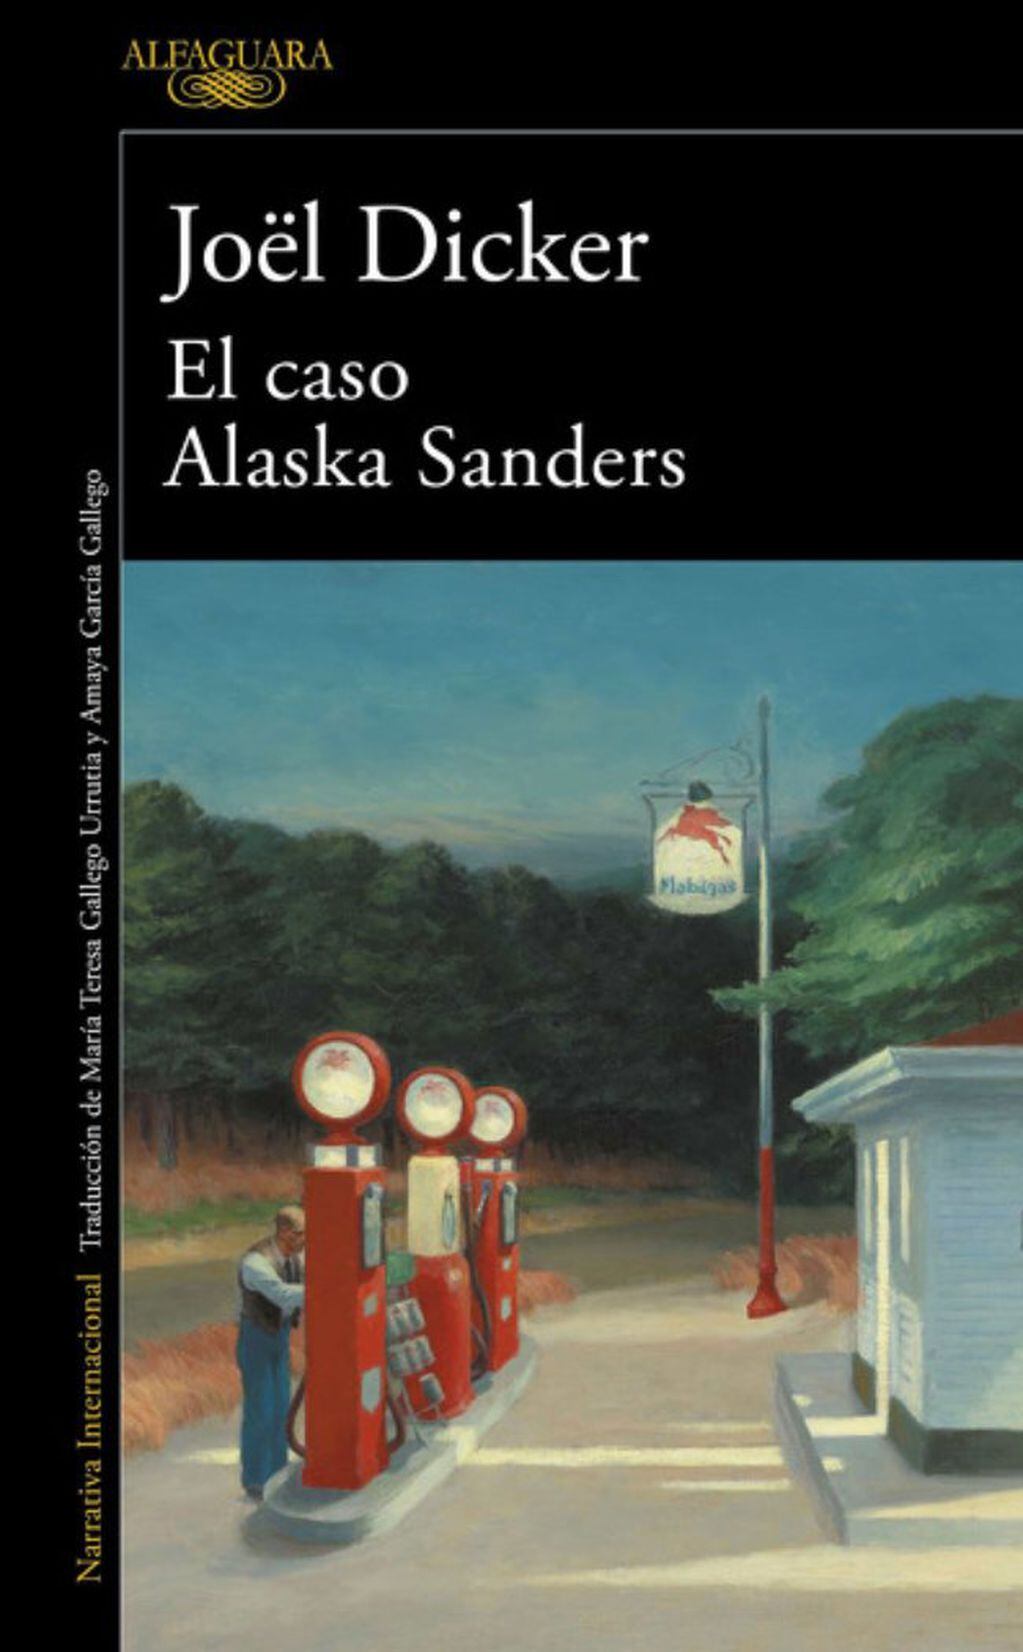 El caso de Alaska Sanders.